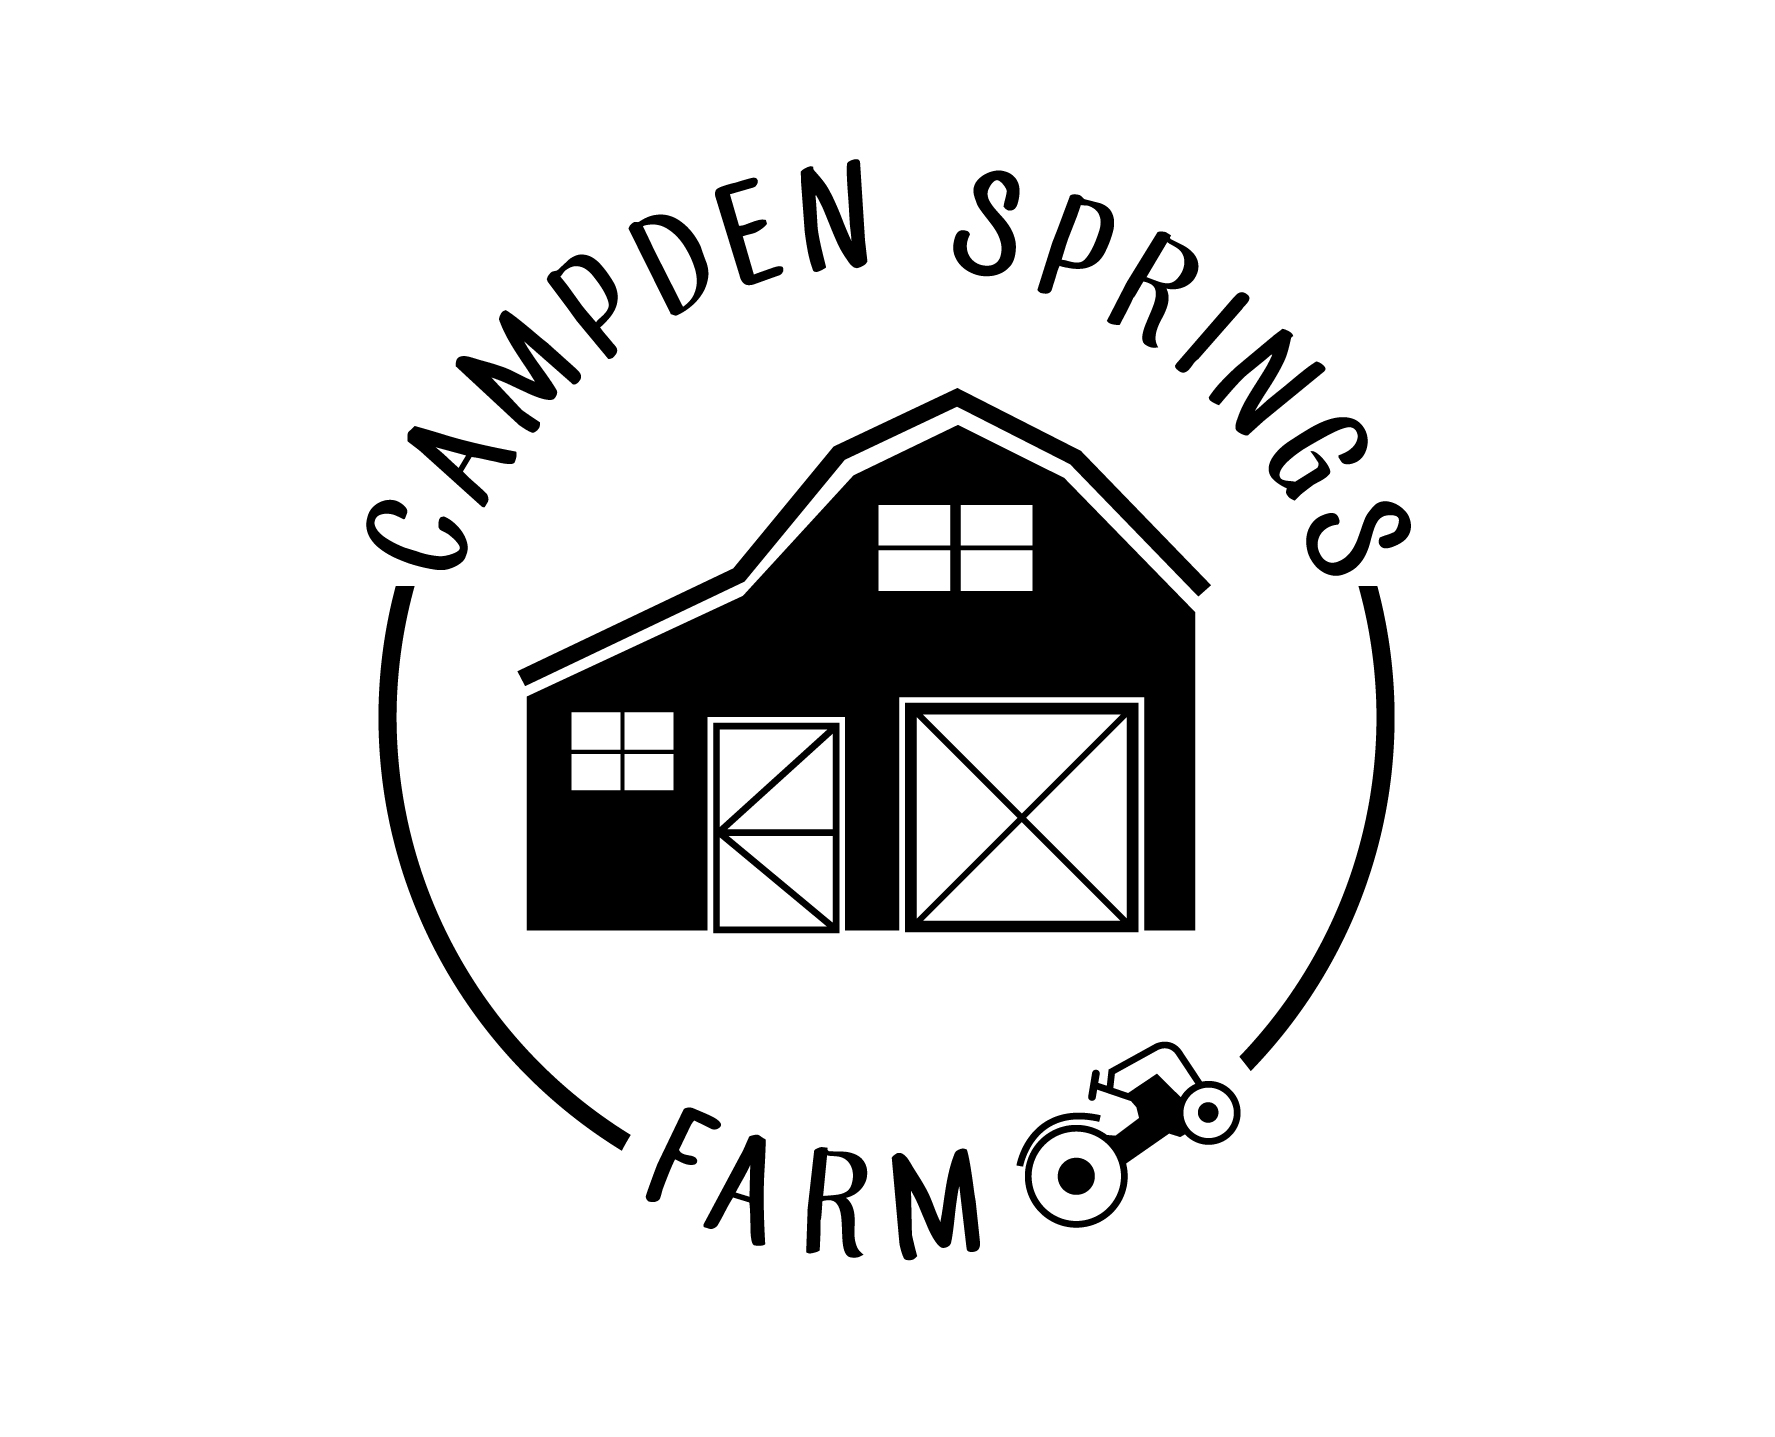 Campden Springs Farm